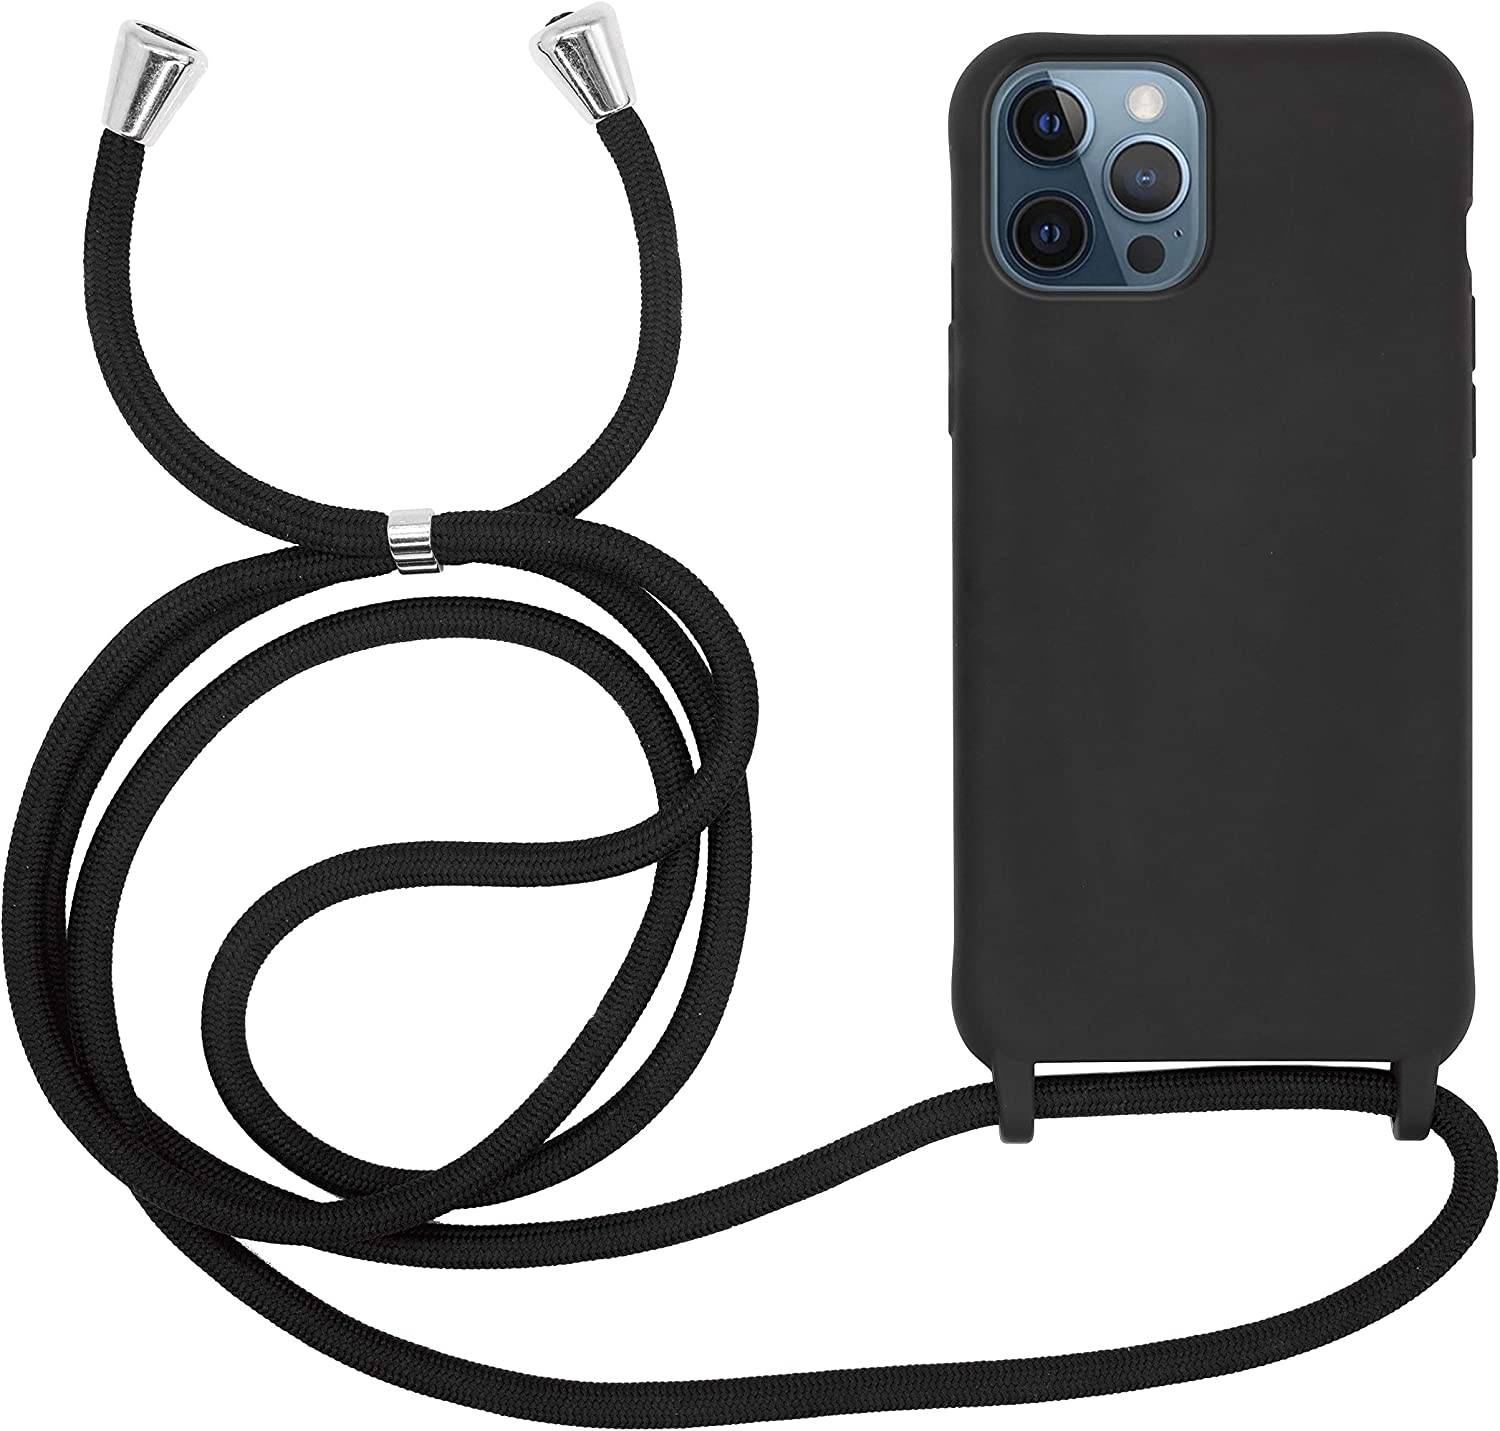 Coque avec cordon pour iPhone 12 Pro max - Protection en Silicone Case - Coque tour de cou, bandoulière iPhone - Coques&Co